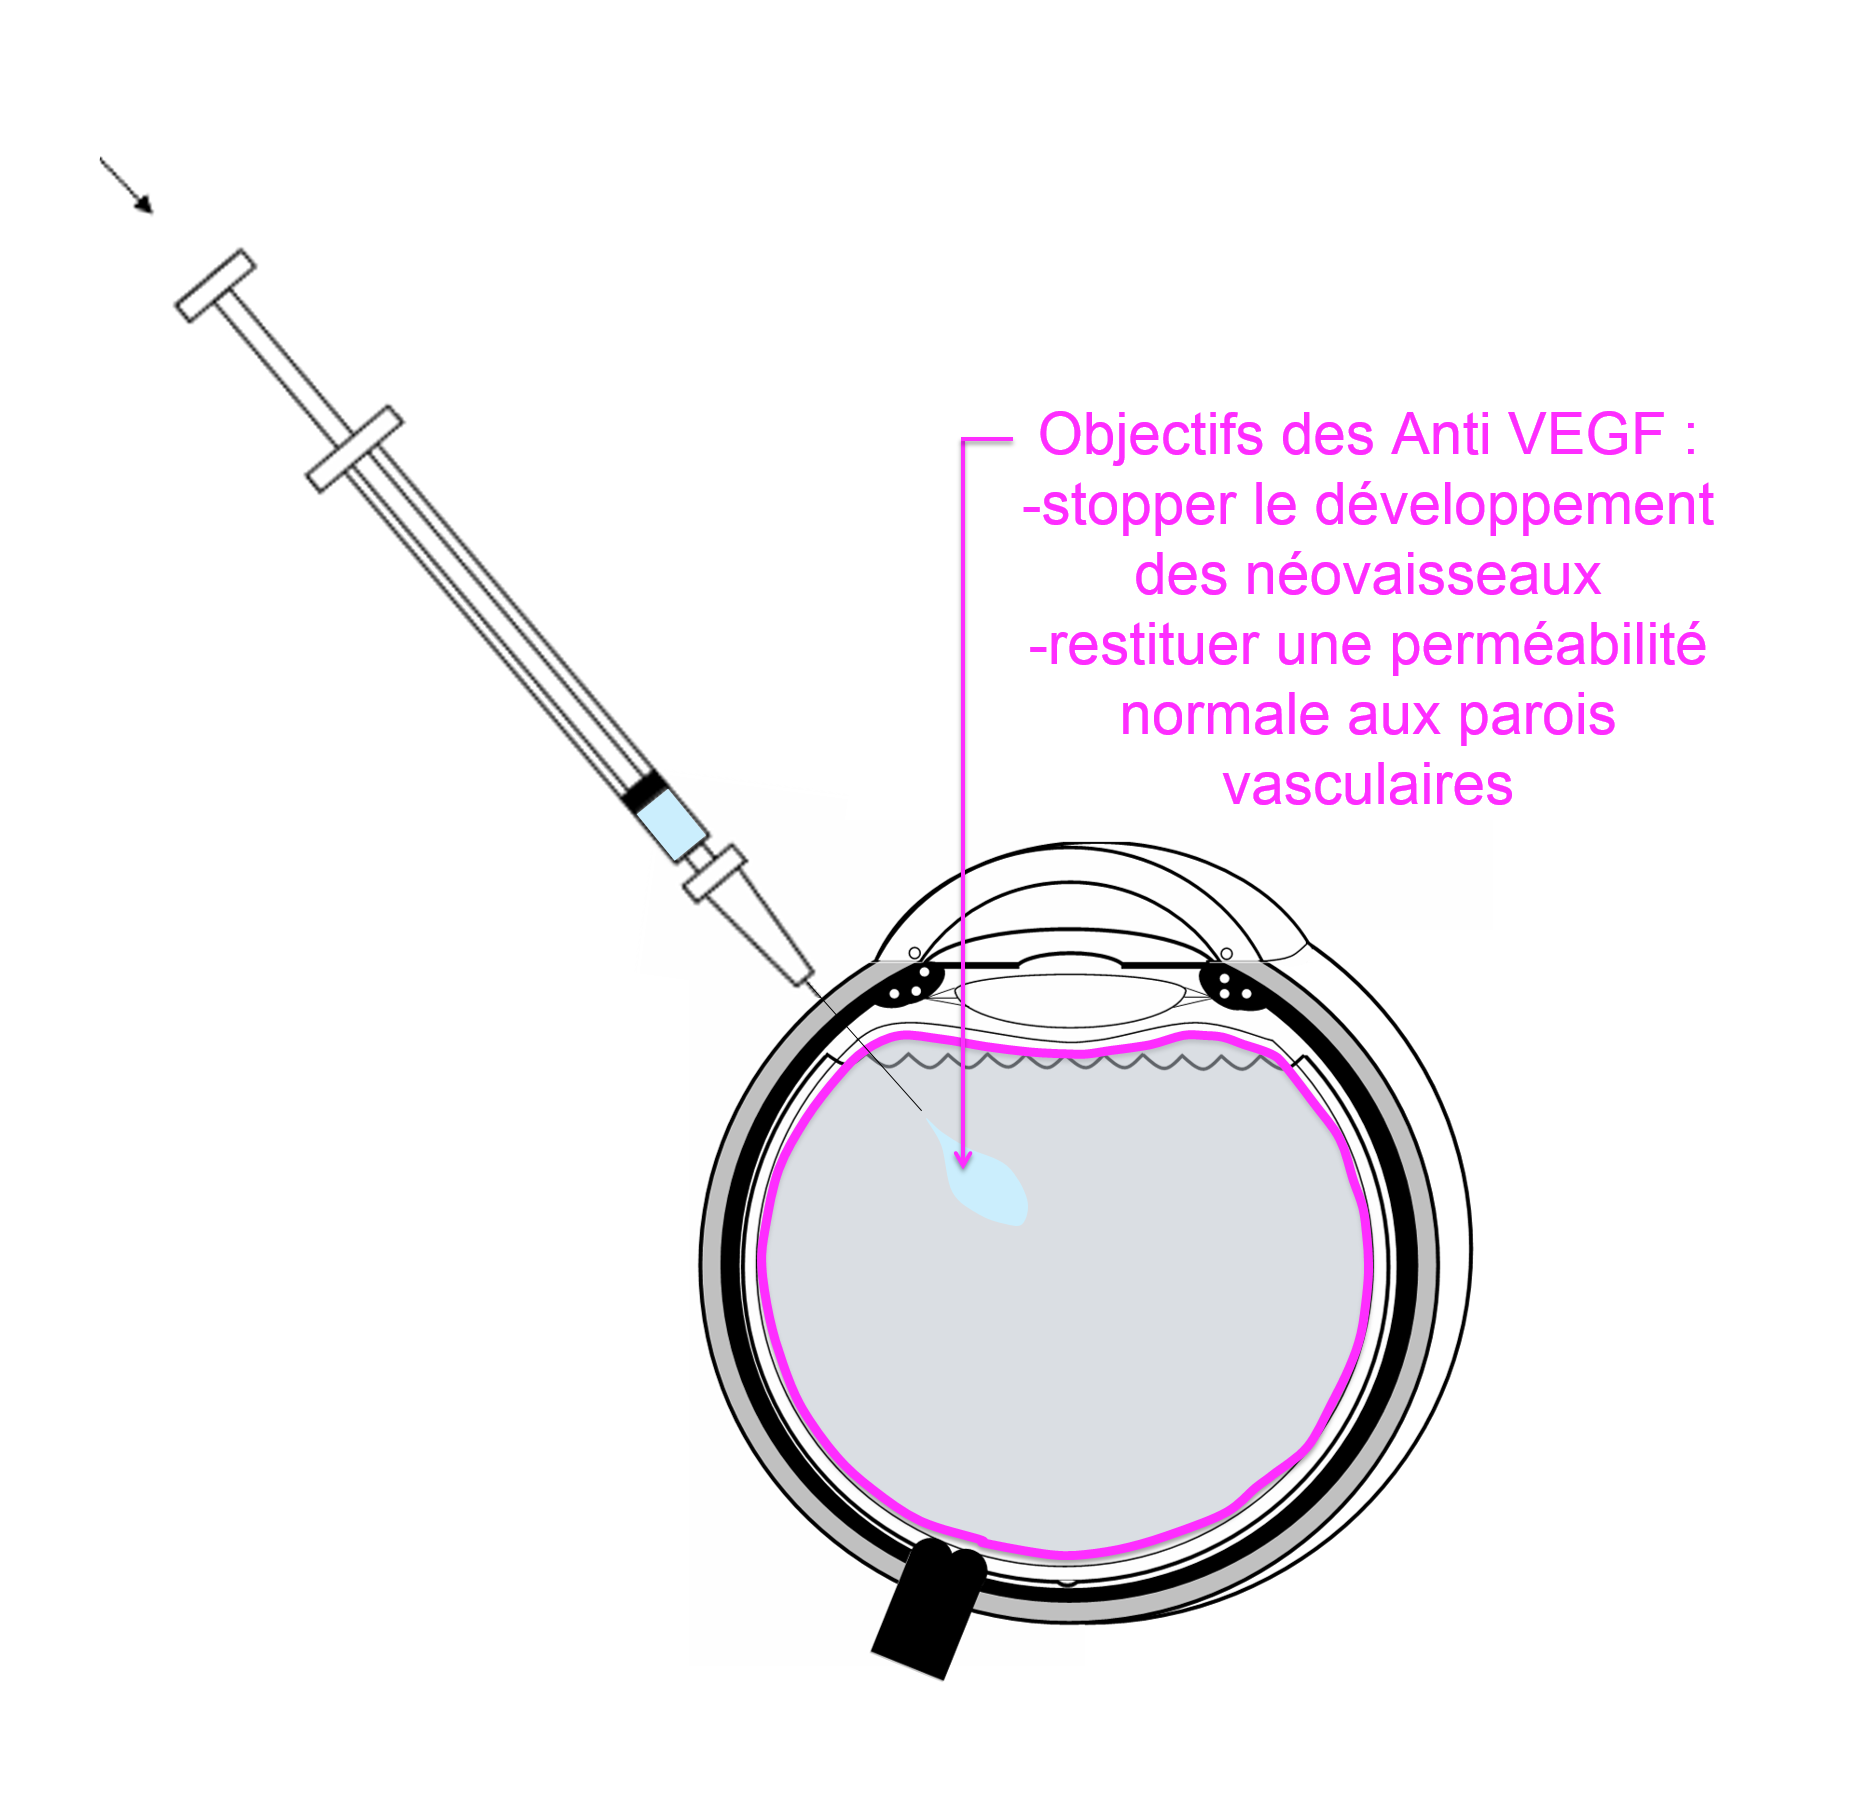 injection intra vitréenne d'anti VEGF pour le traitement d'une occlusion de veine de la rétine compliquée d'oedème maculaire